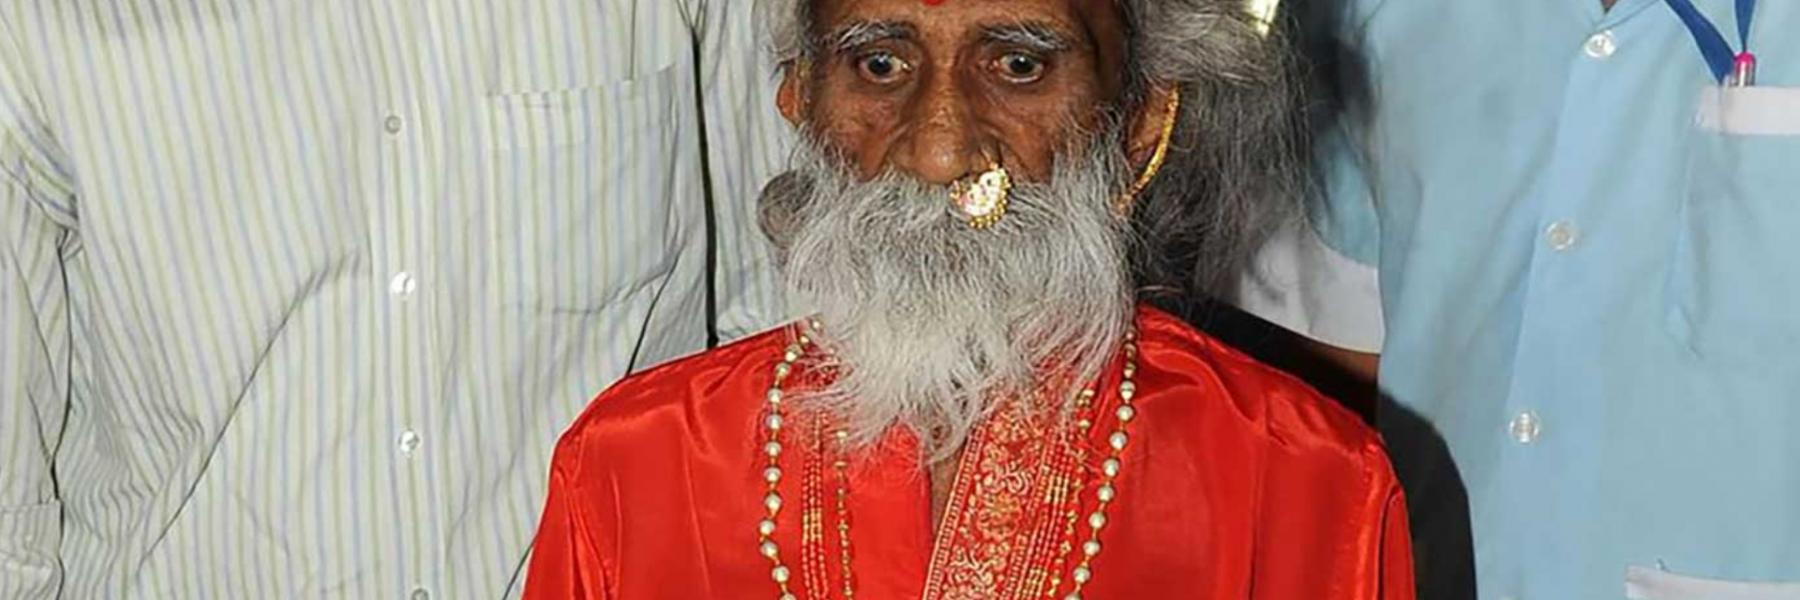 رجل هندي كبير في السن